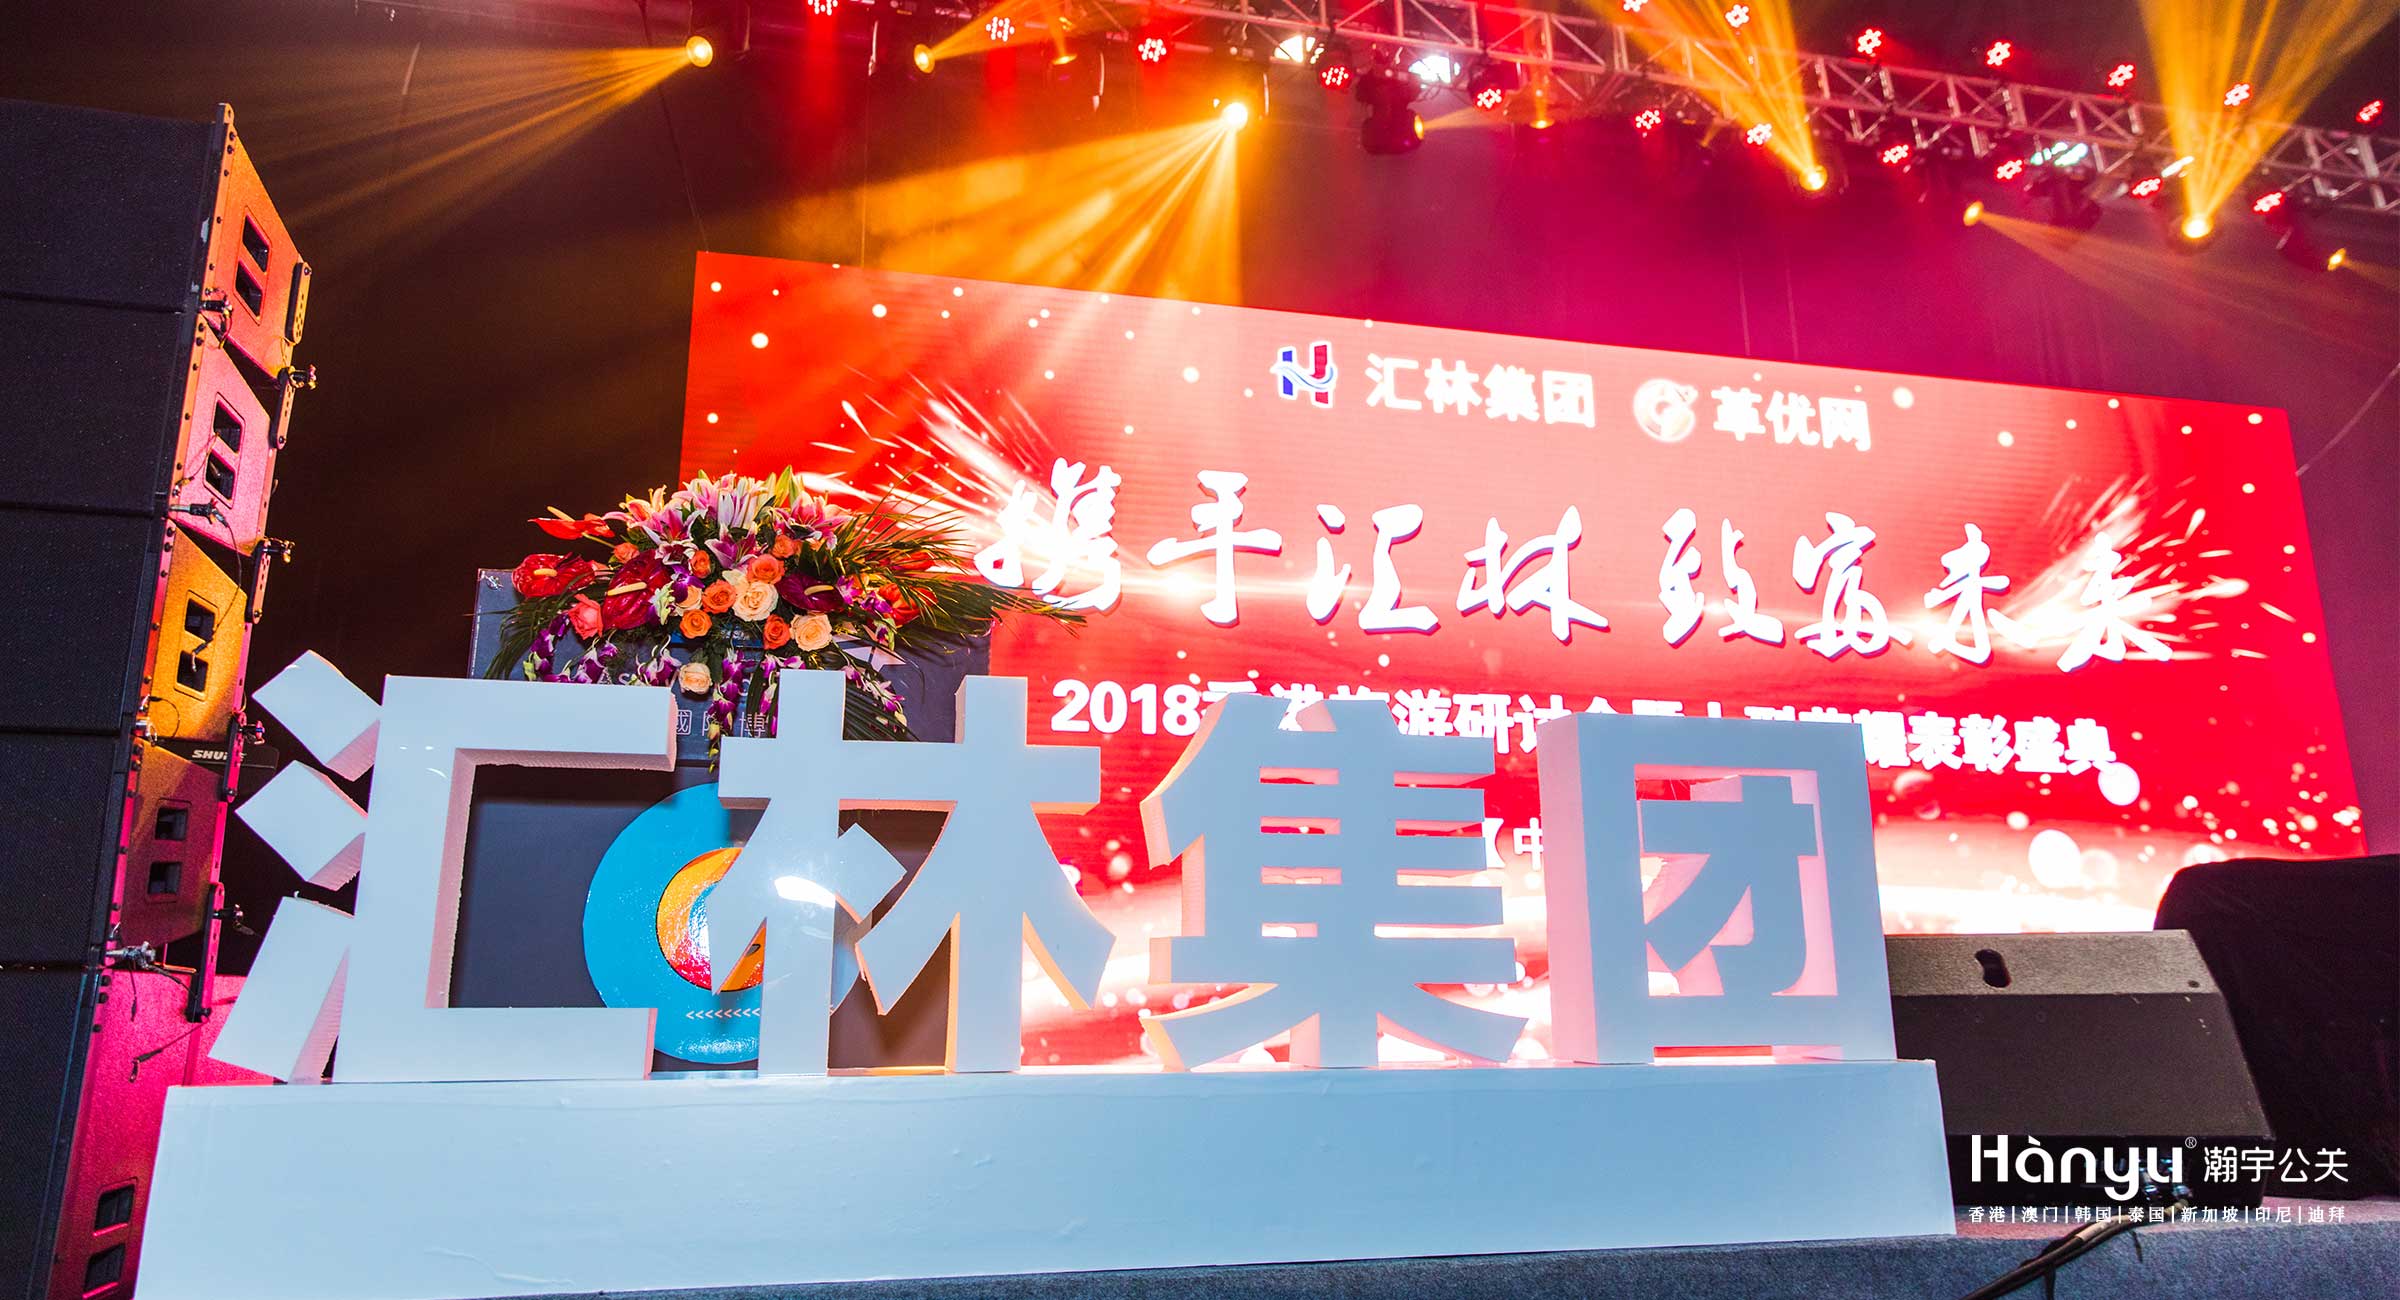 汇林集团香港旅游研讨会暨大型荣耀表彰盛典